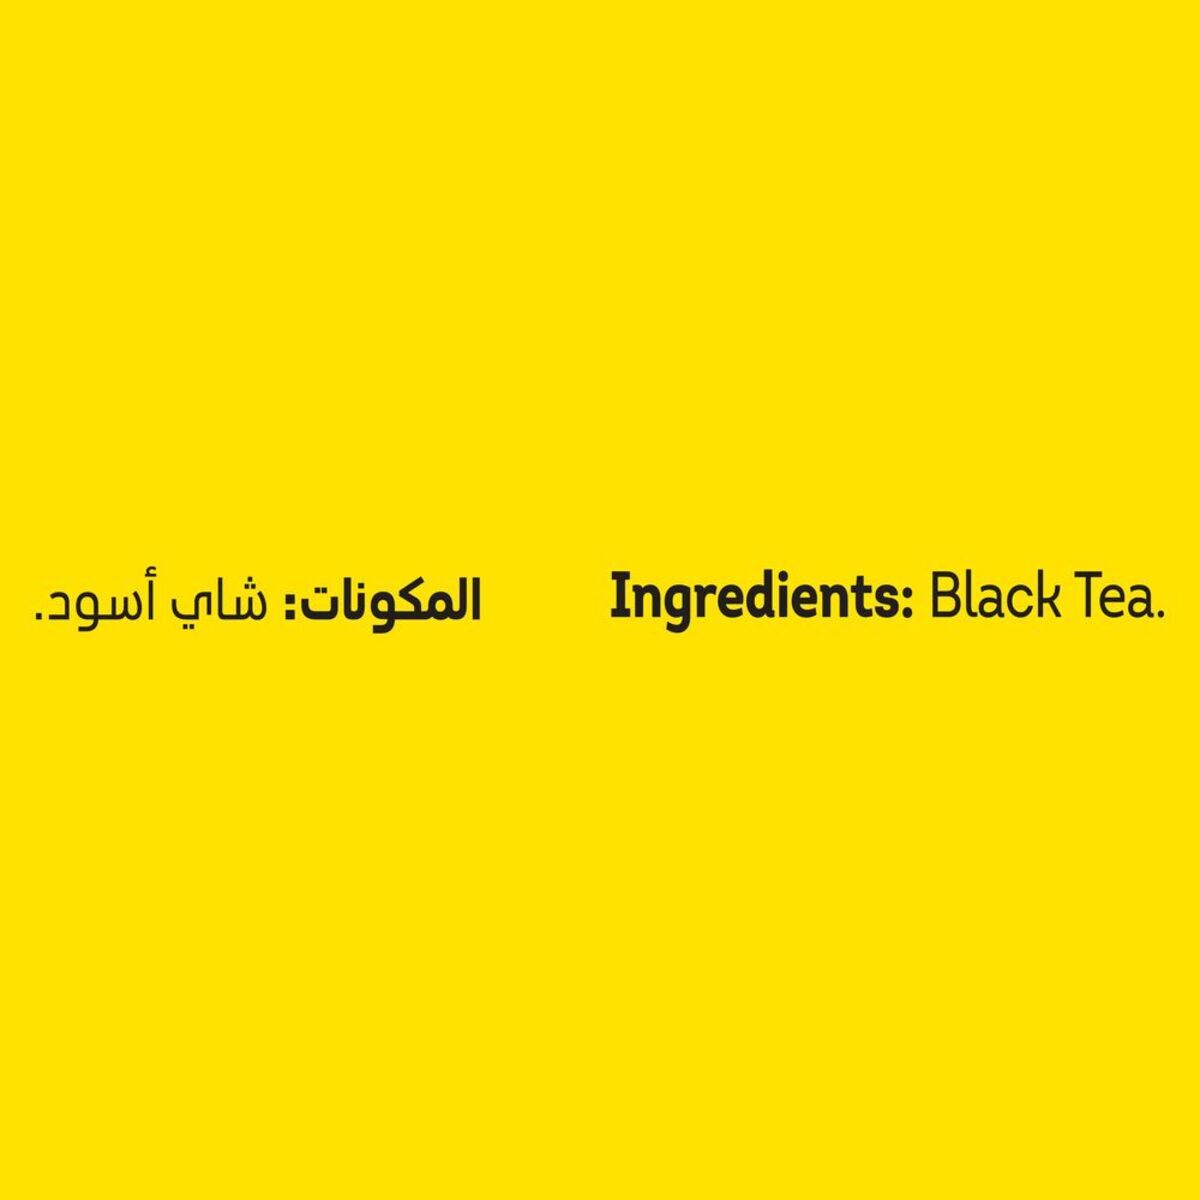 Lipton Yellow Label Teabags 176 pcs + 48 pcs